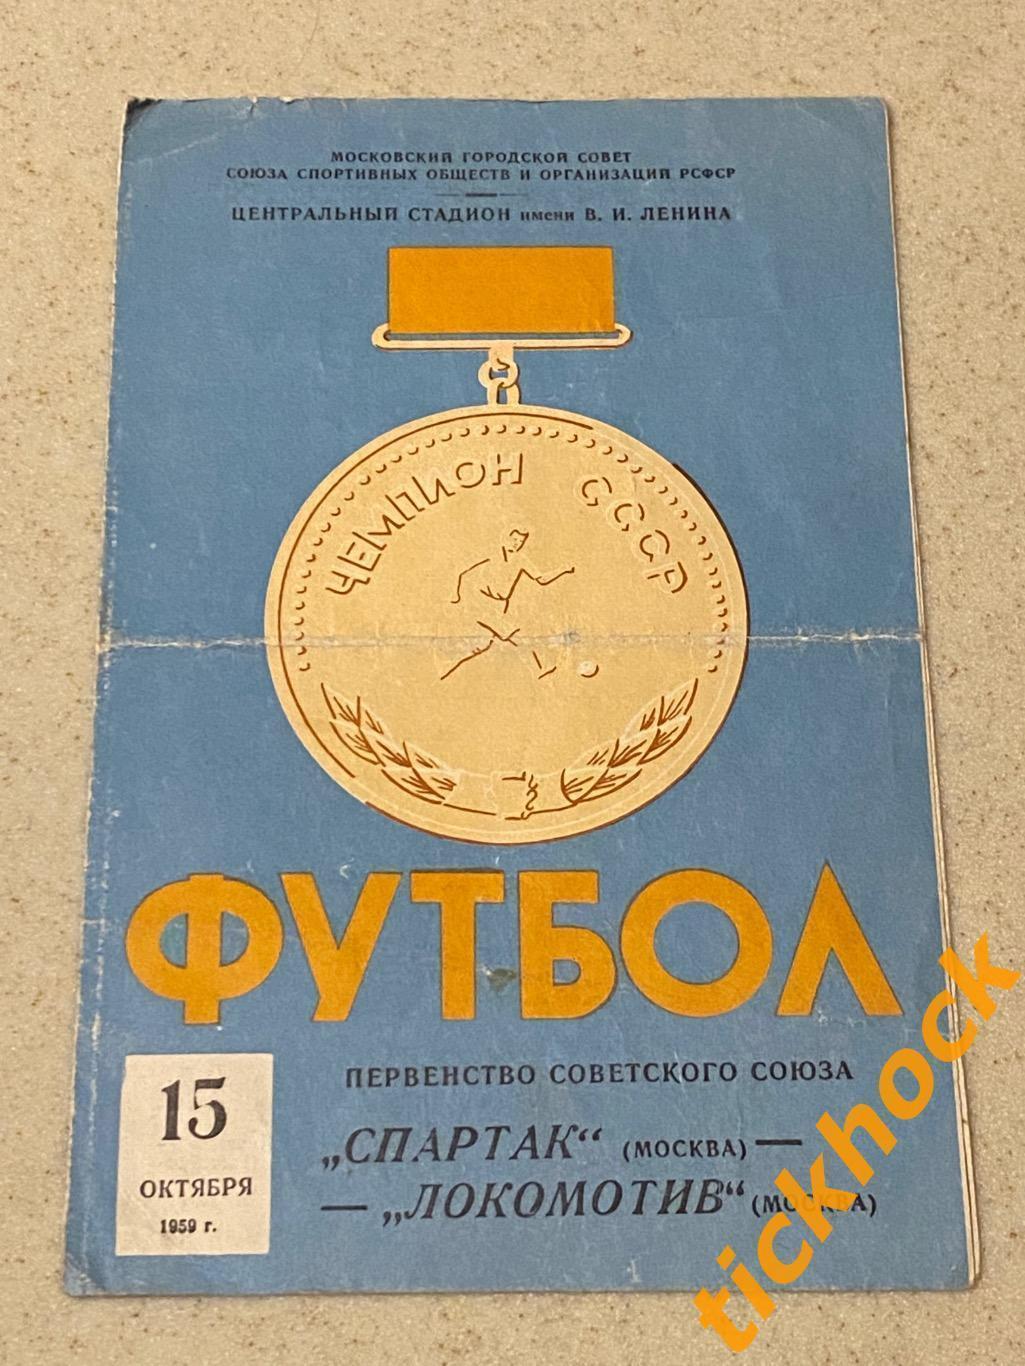 Спартак Москва - Локомотив Москва 15.10.1959 Первенство СССР - SY 1